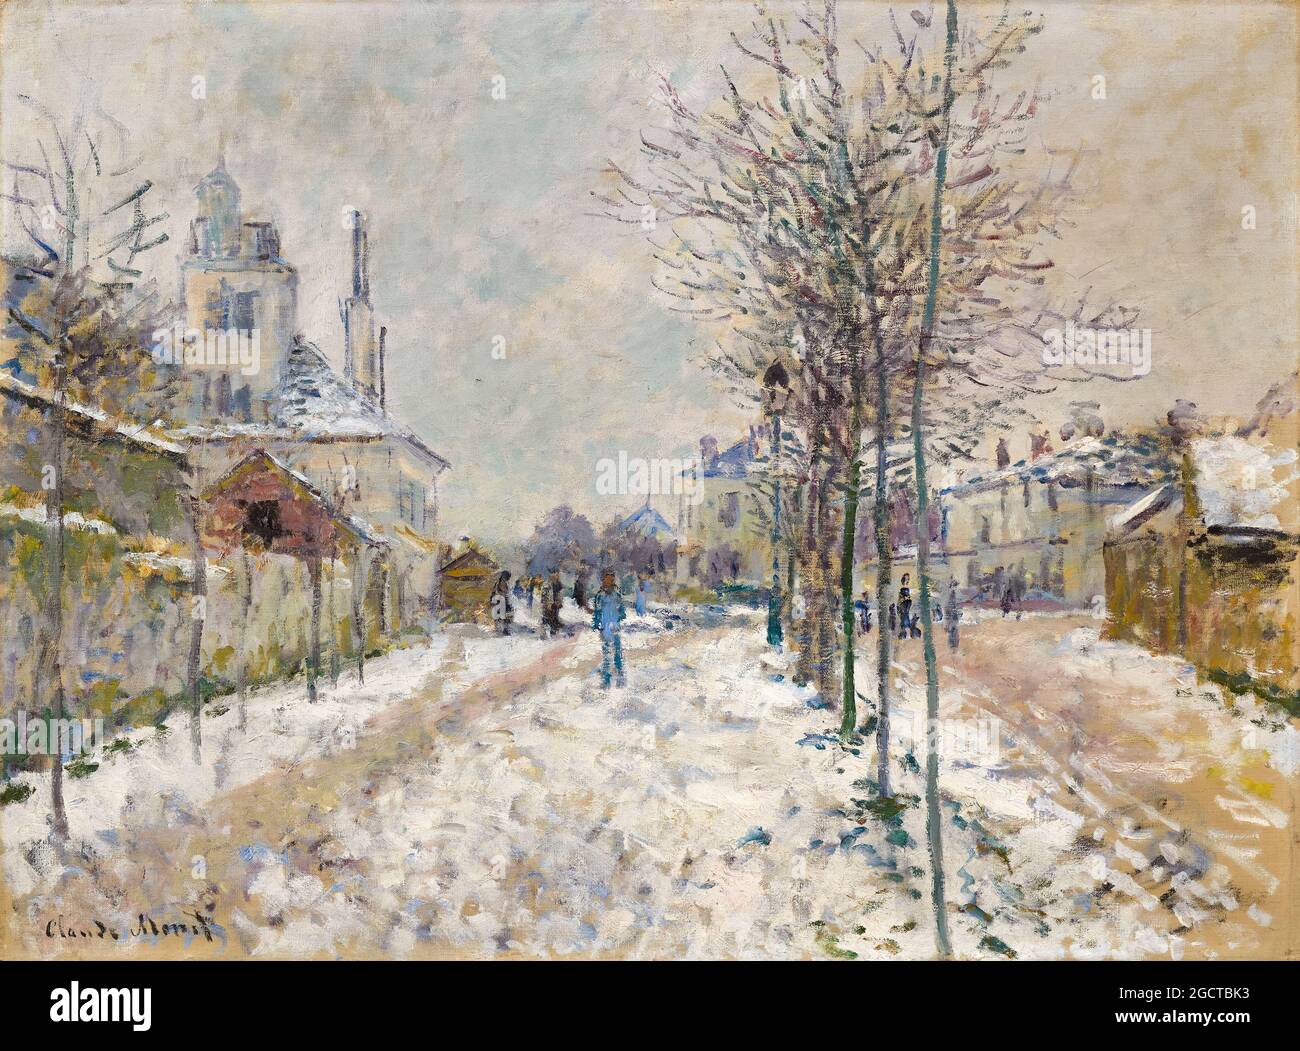 Claude Monet, The snow-covered Boulevard de Pontoise in Argenteuil, landscape painting, 1875 Stock Photo